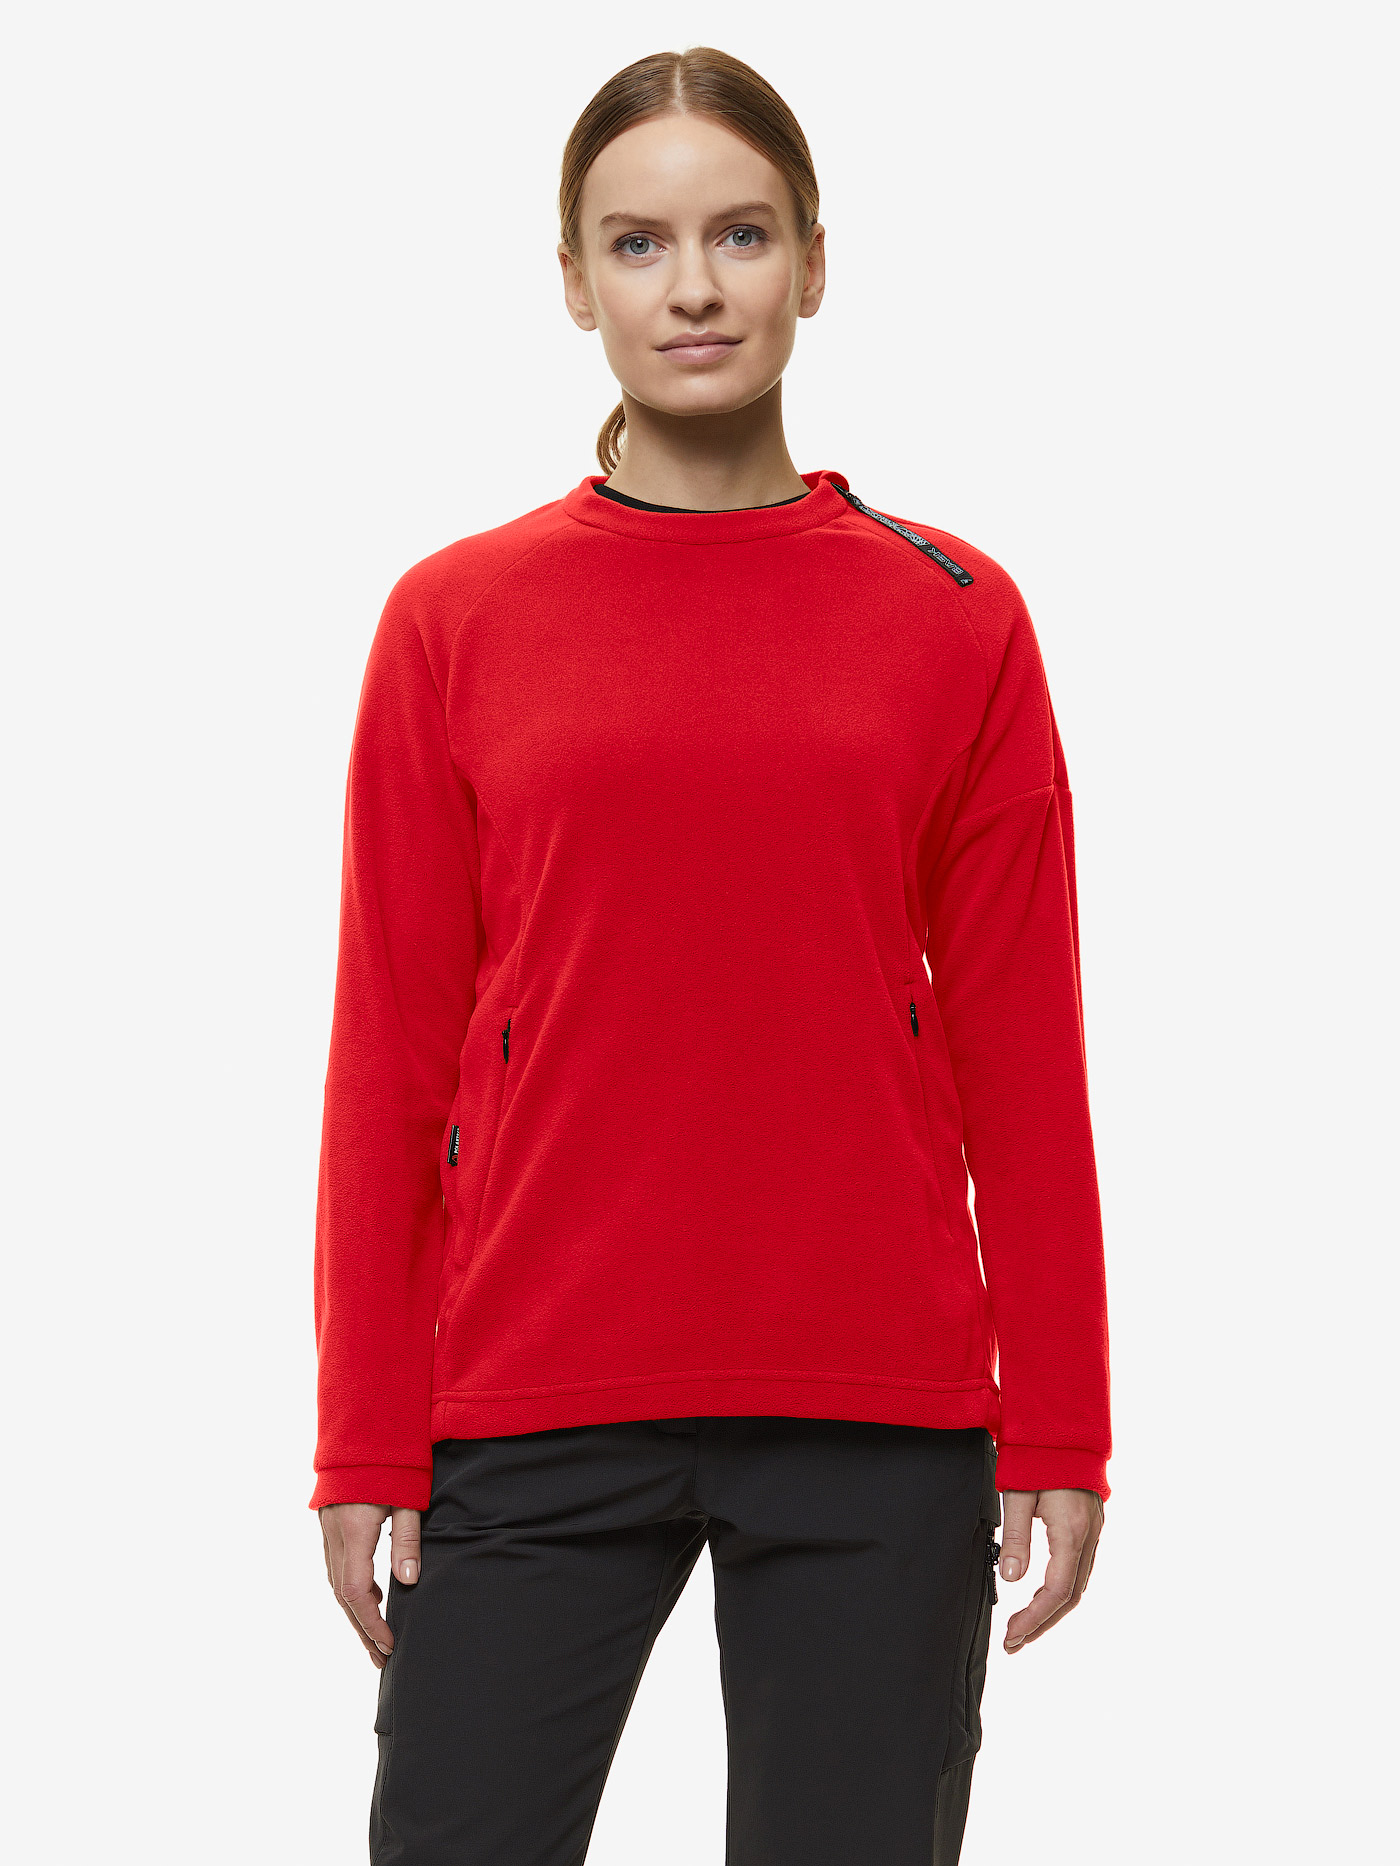 Куртка BASK, размер 42, цвет красный 21008-9205-042 Micro lj v2 - фото 2